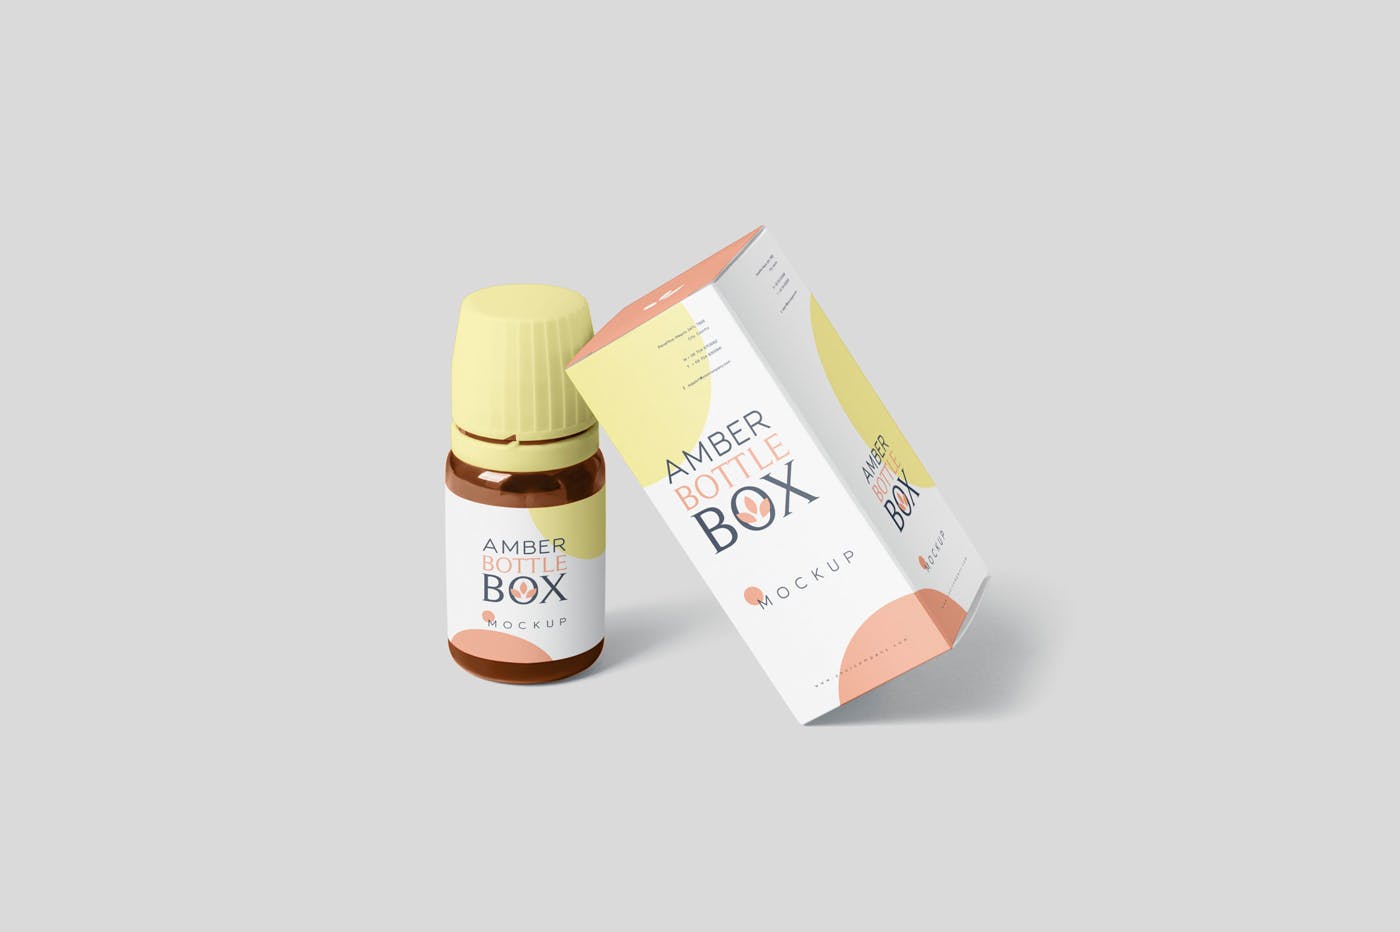 药物瓶&包装纸盒设计图第一素材精选模板 Amber Bottle Box Mockup Set插图(4)